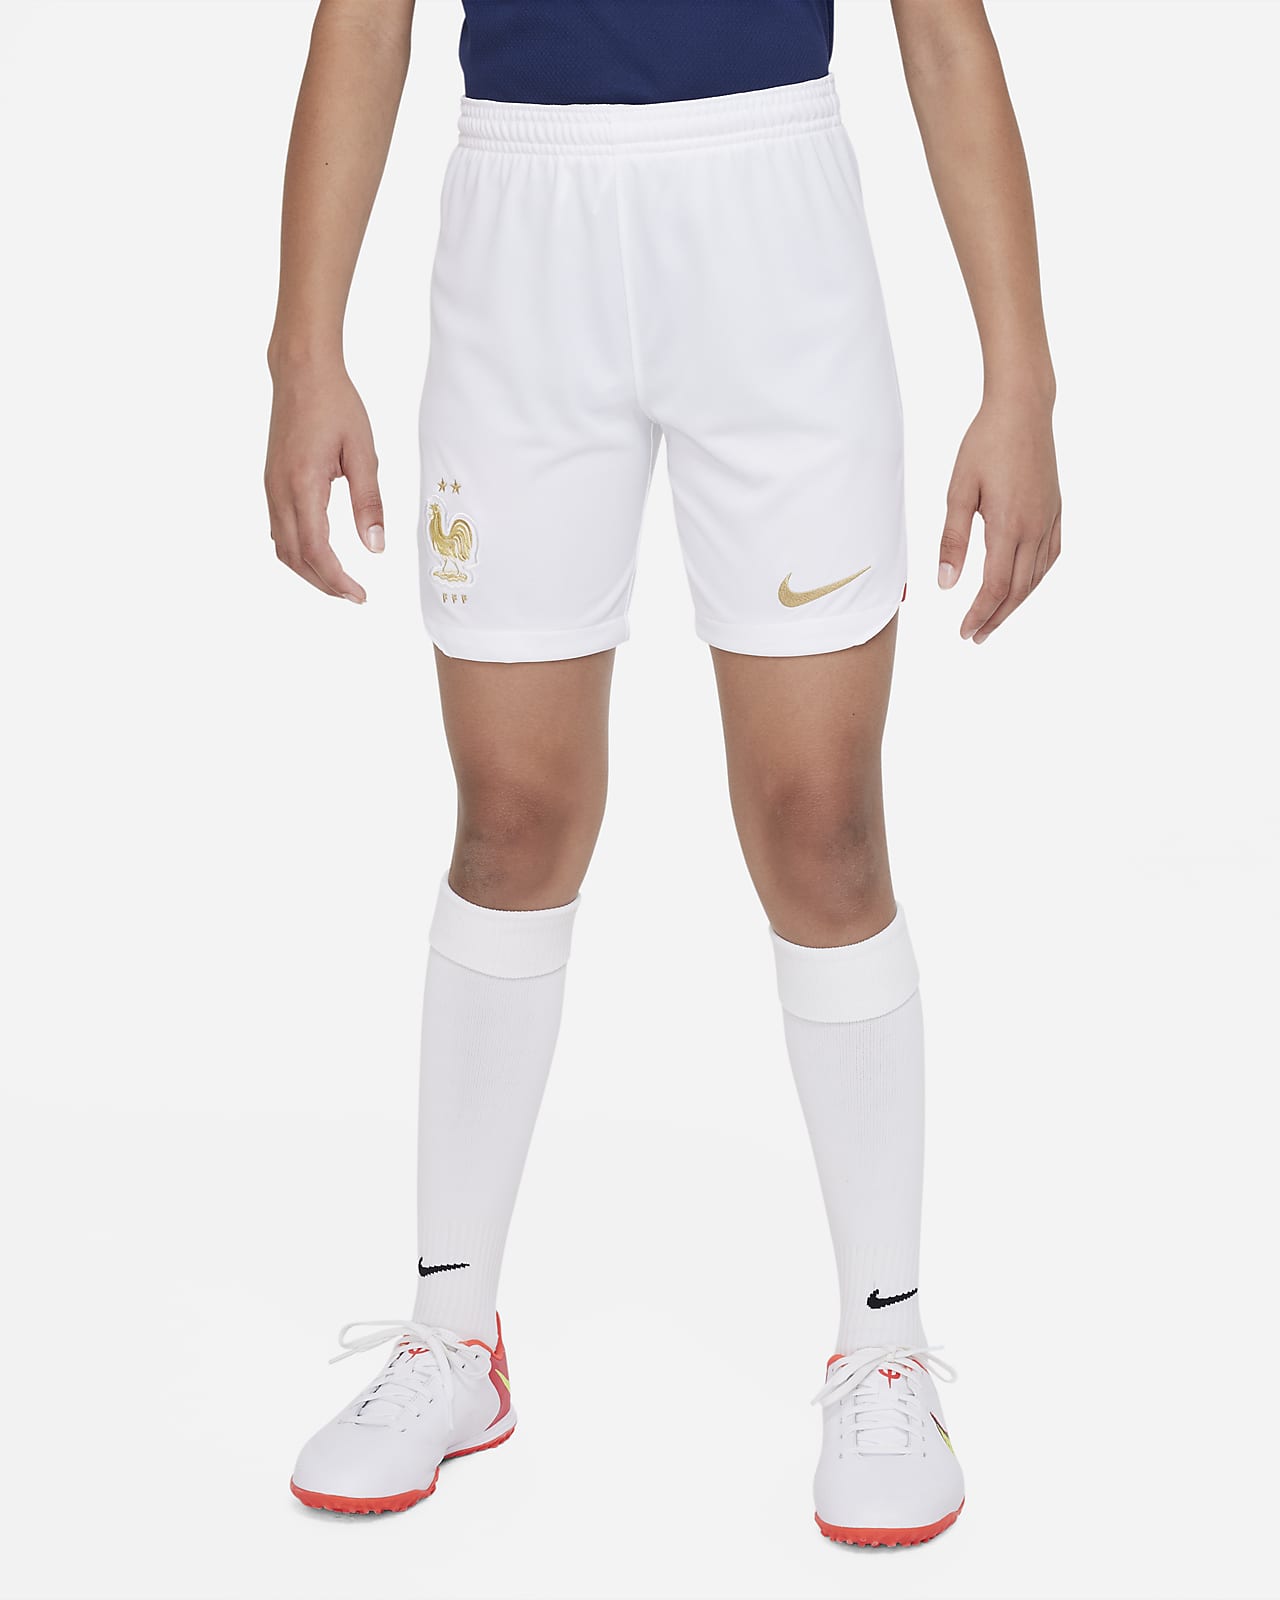 FFF 2022/23 Stadium Home Older Kids' Nike Dri-FIT Football Shorts